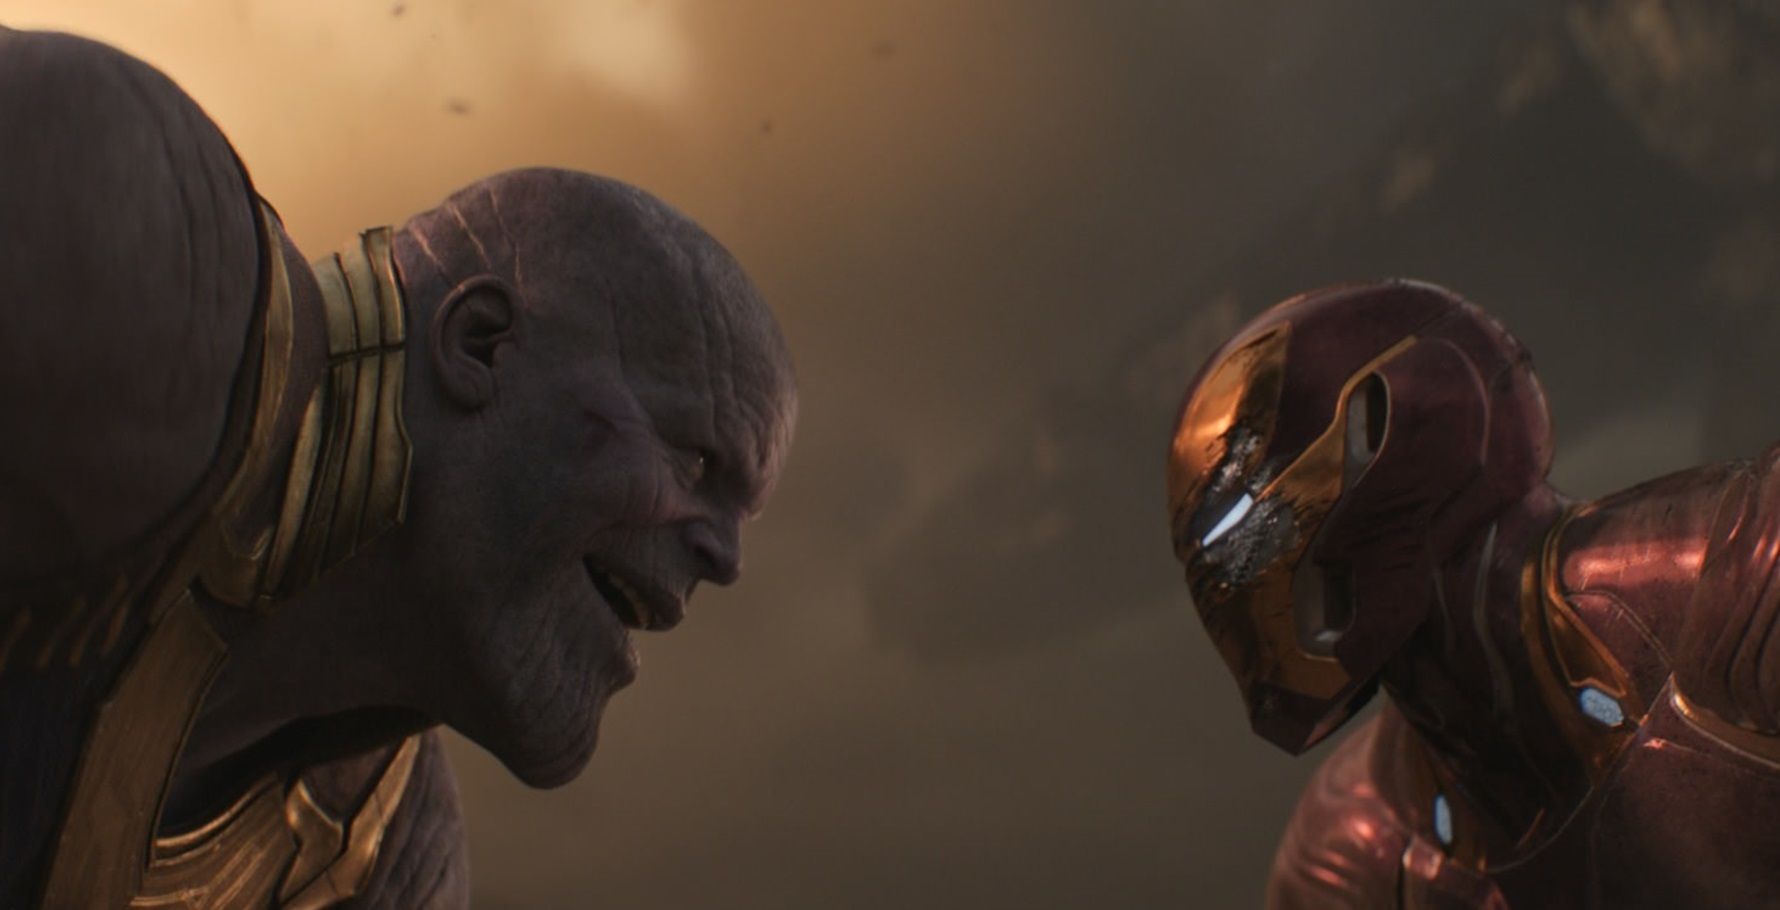 Tony vs Thanos